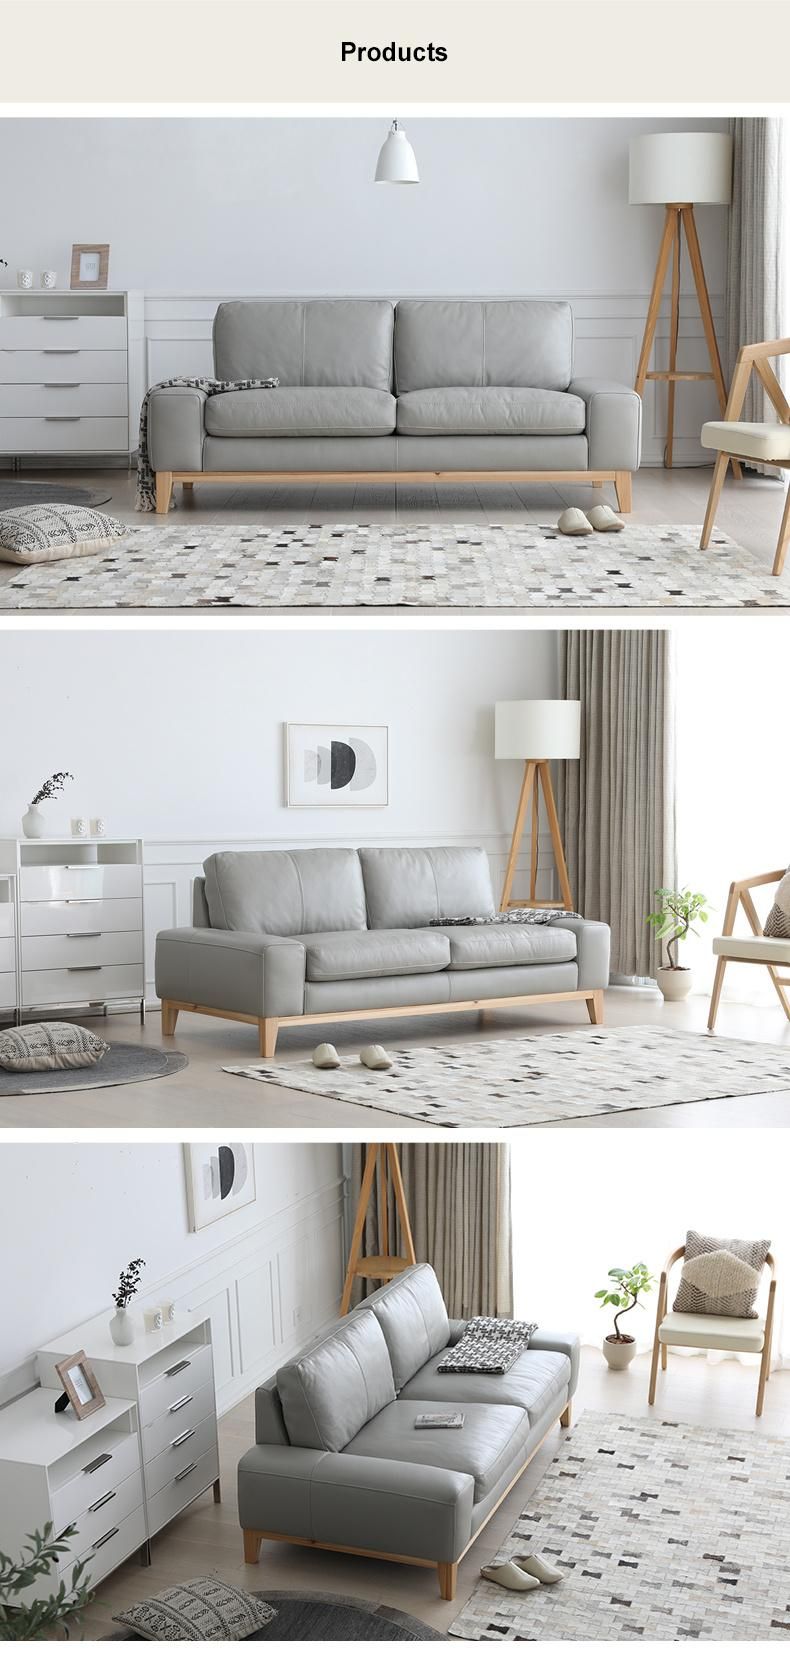 Contemporary Design Genuine Leather Sofa for Living Room